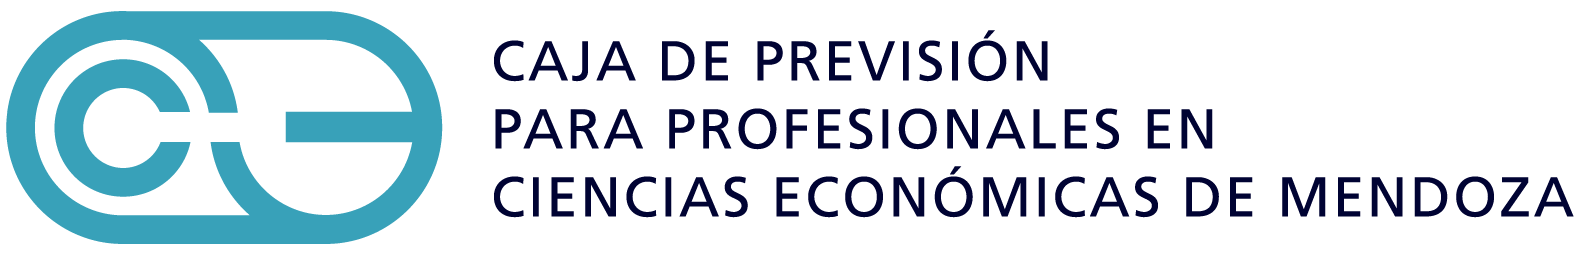 CCEMZA | Caja de Previsión para Profesionales en Ciencias Económicas